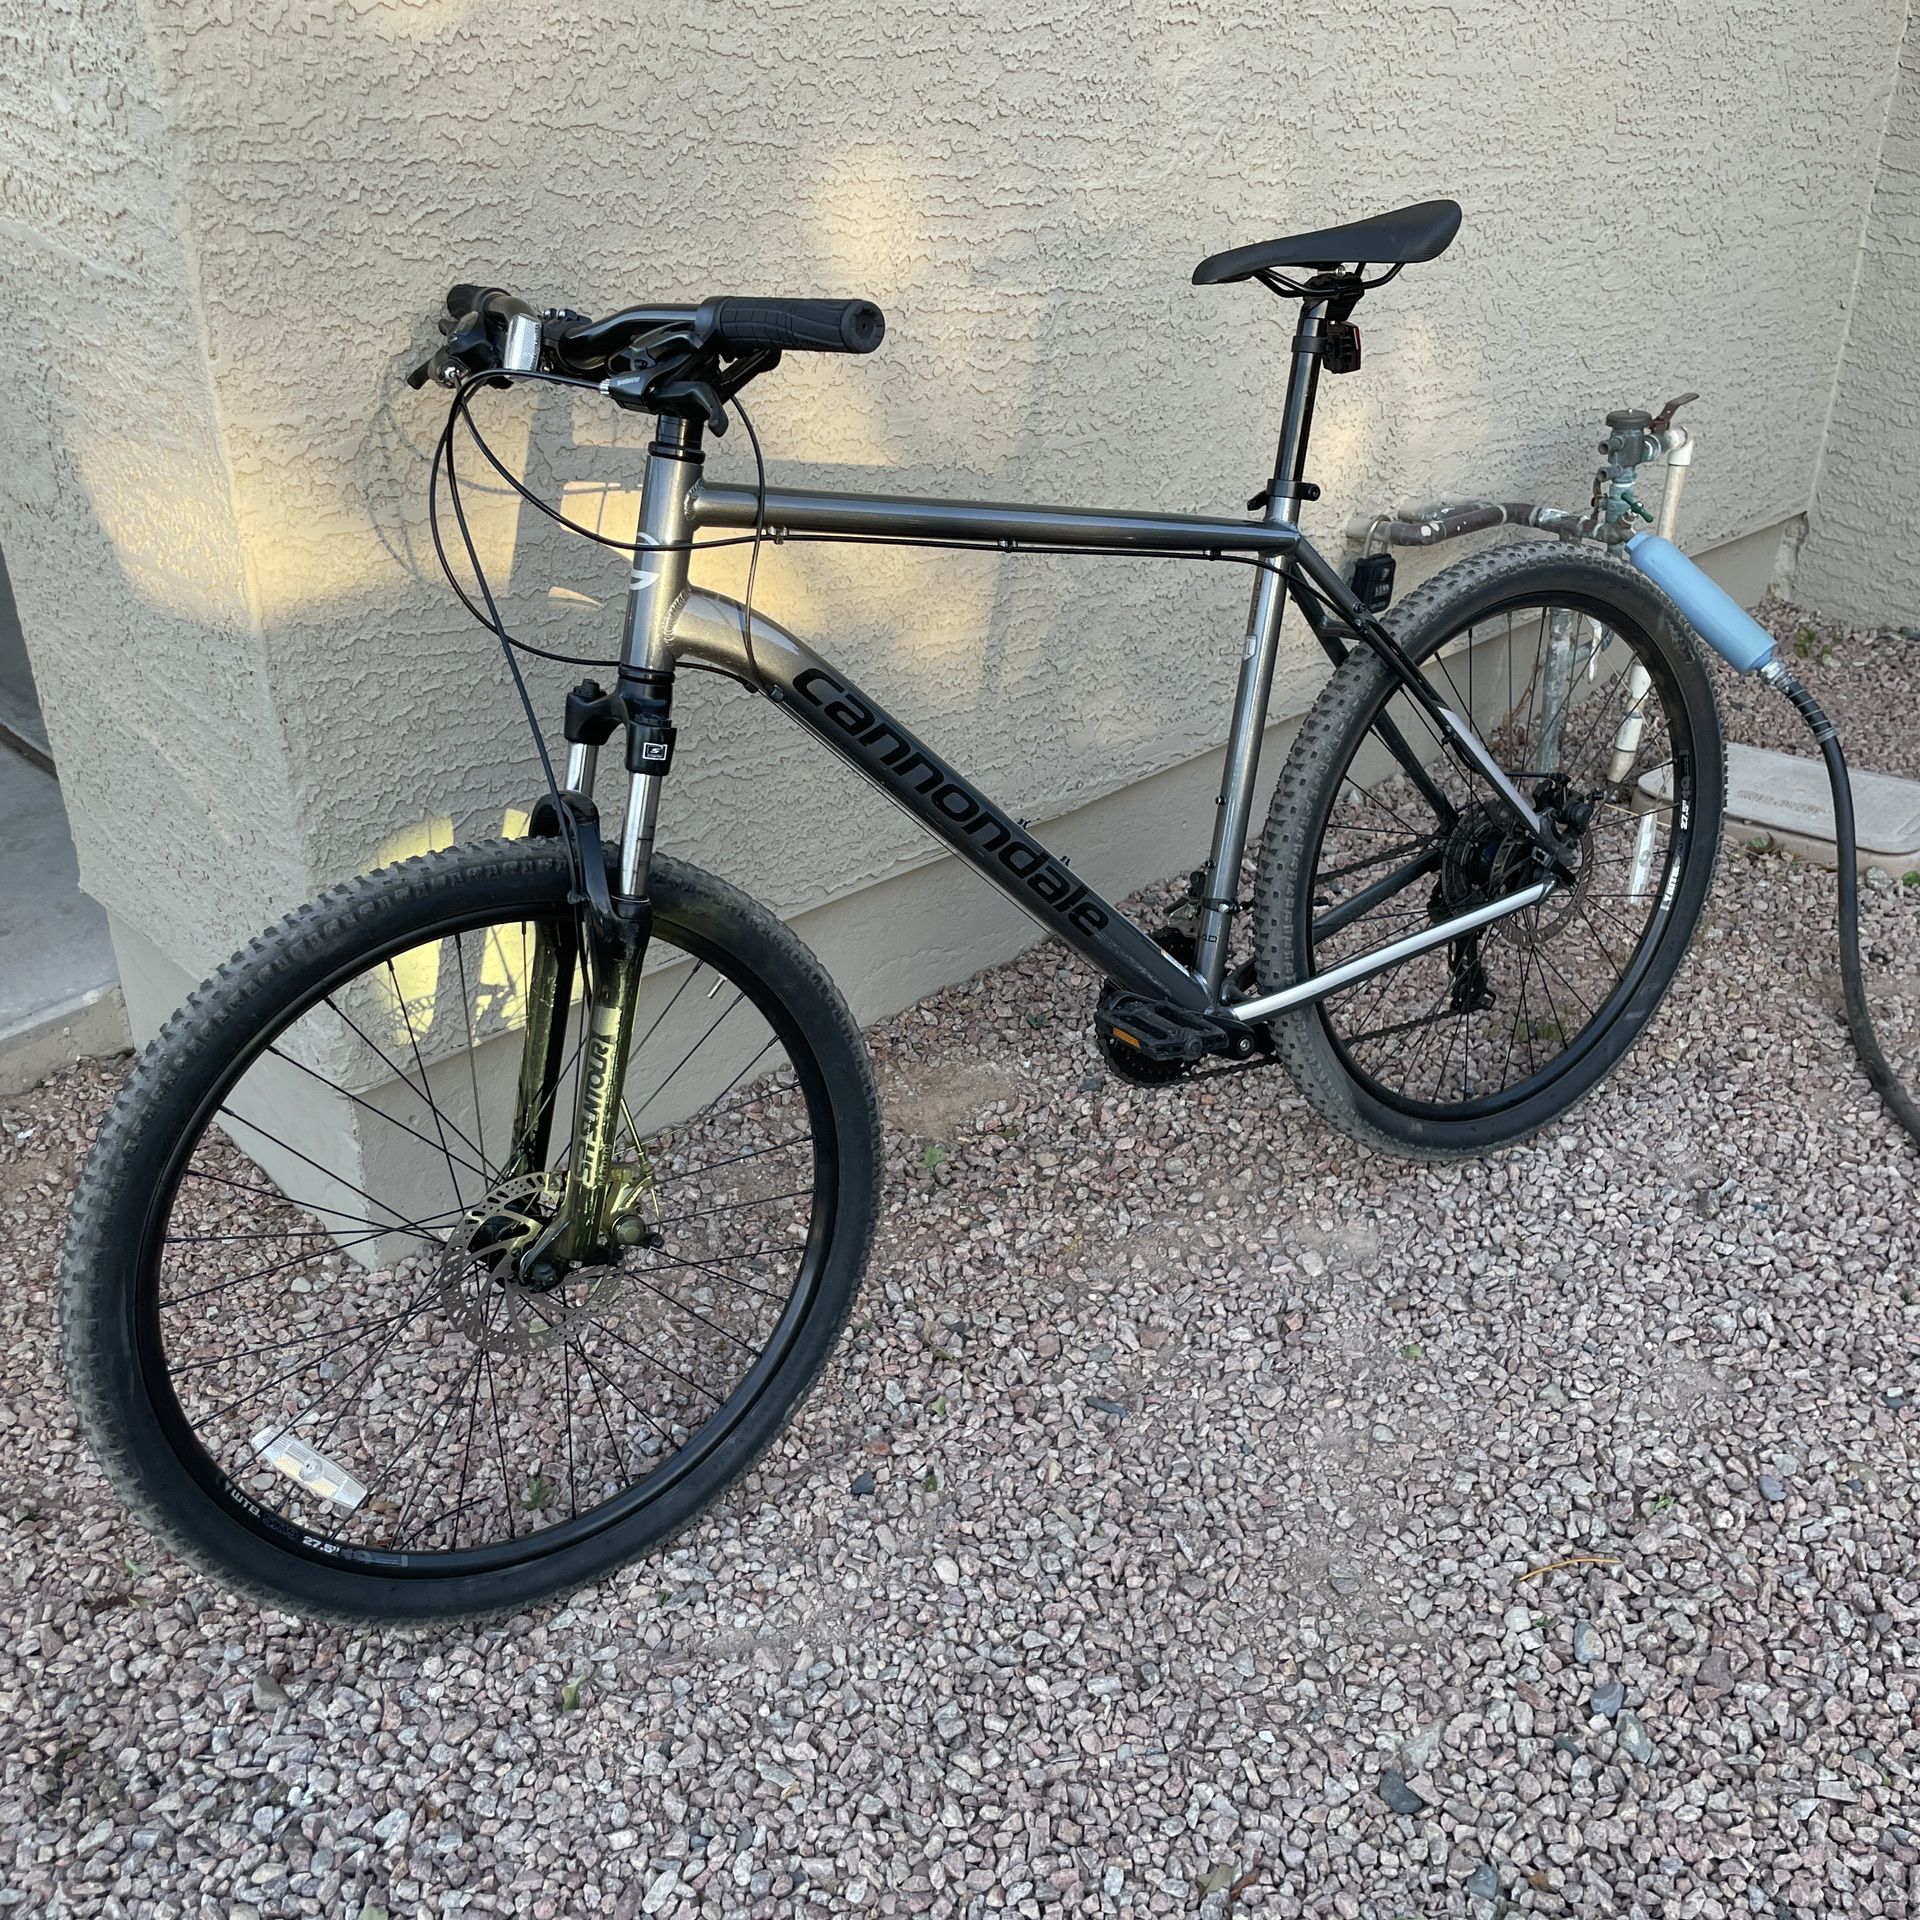 Dubbelzinnig katje aankomen 2019 Cannondale Catalyst 3 27.5” XL Mountain Bike for Sale in Avondale, AZ  - OfferUp